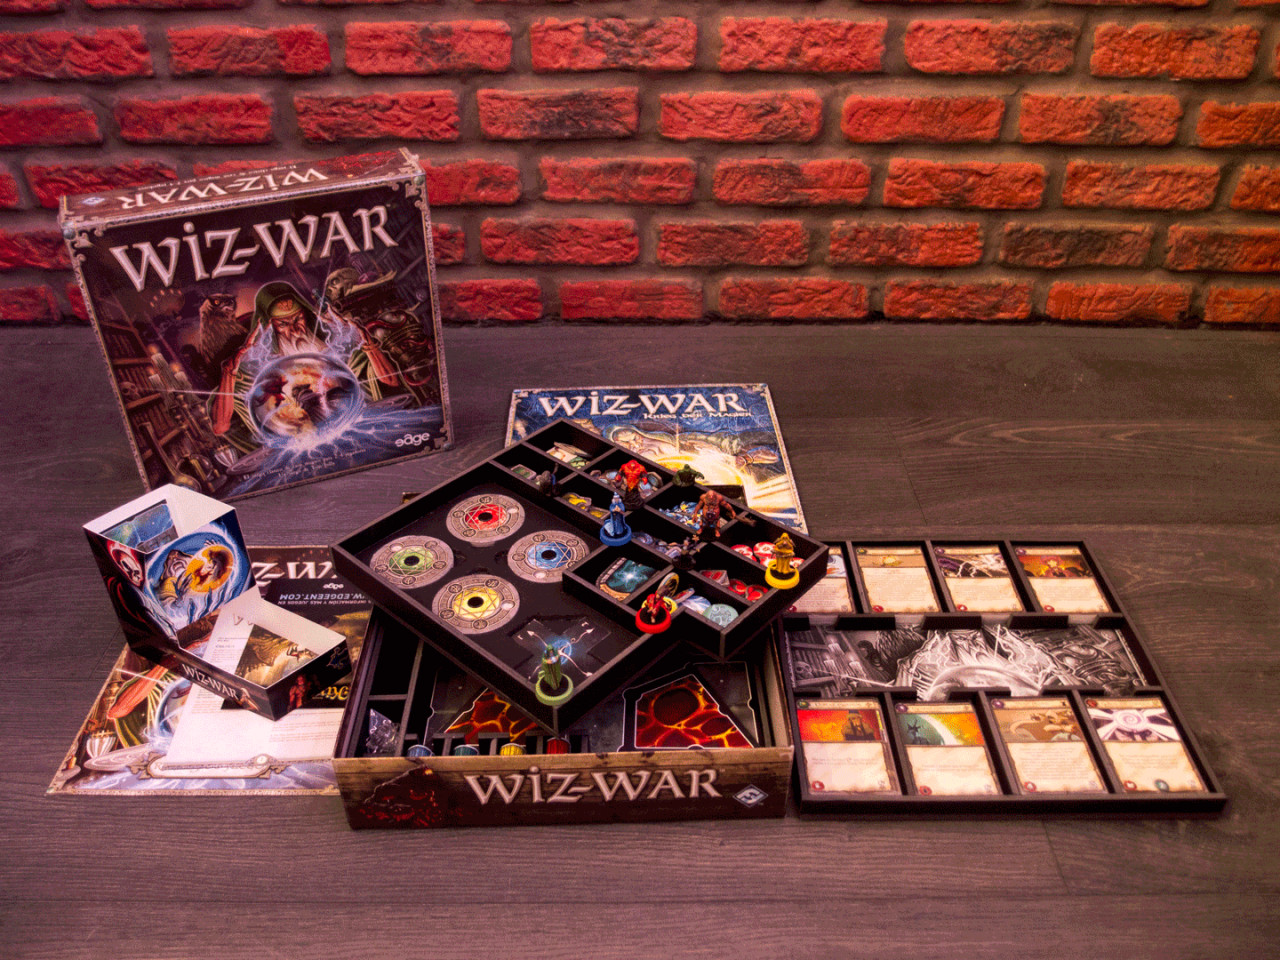 Компоненты Wiz-War издания 2012 года. Хотелось бы увидеть игру на русском языке, чтобы поучаствовать в настоящем магическом сражении.